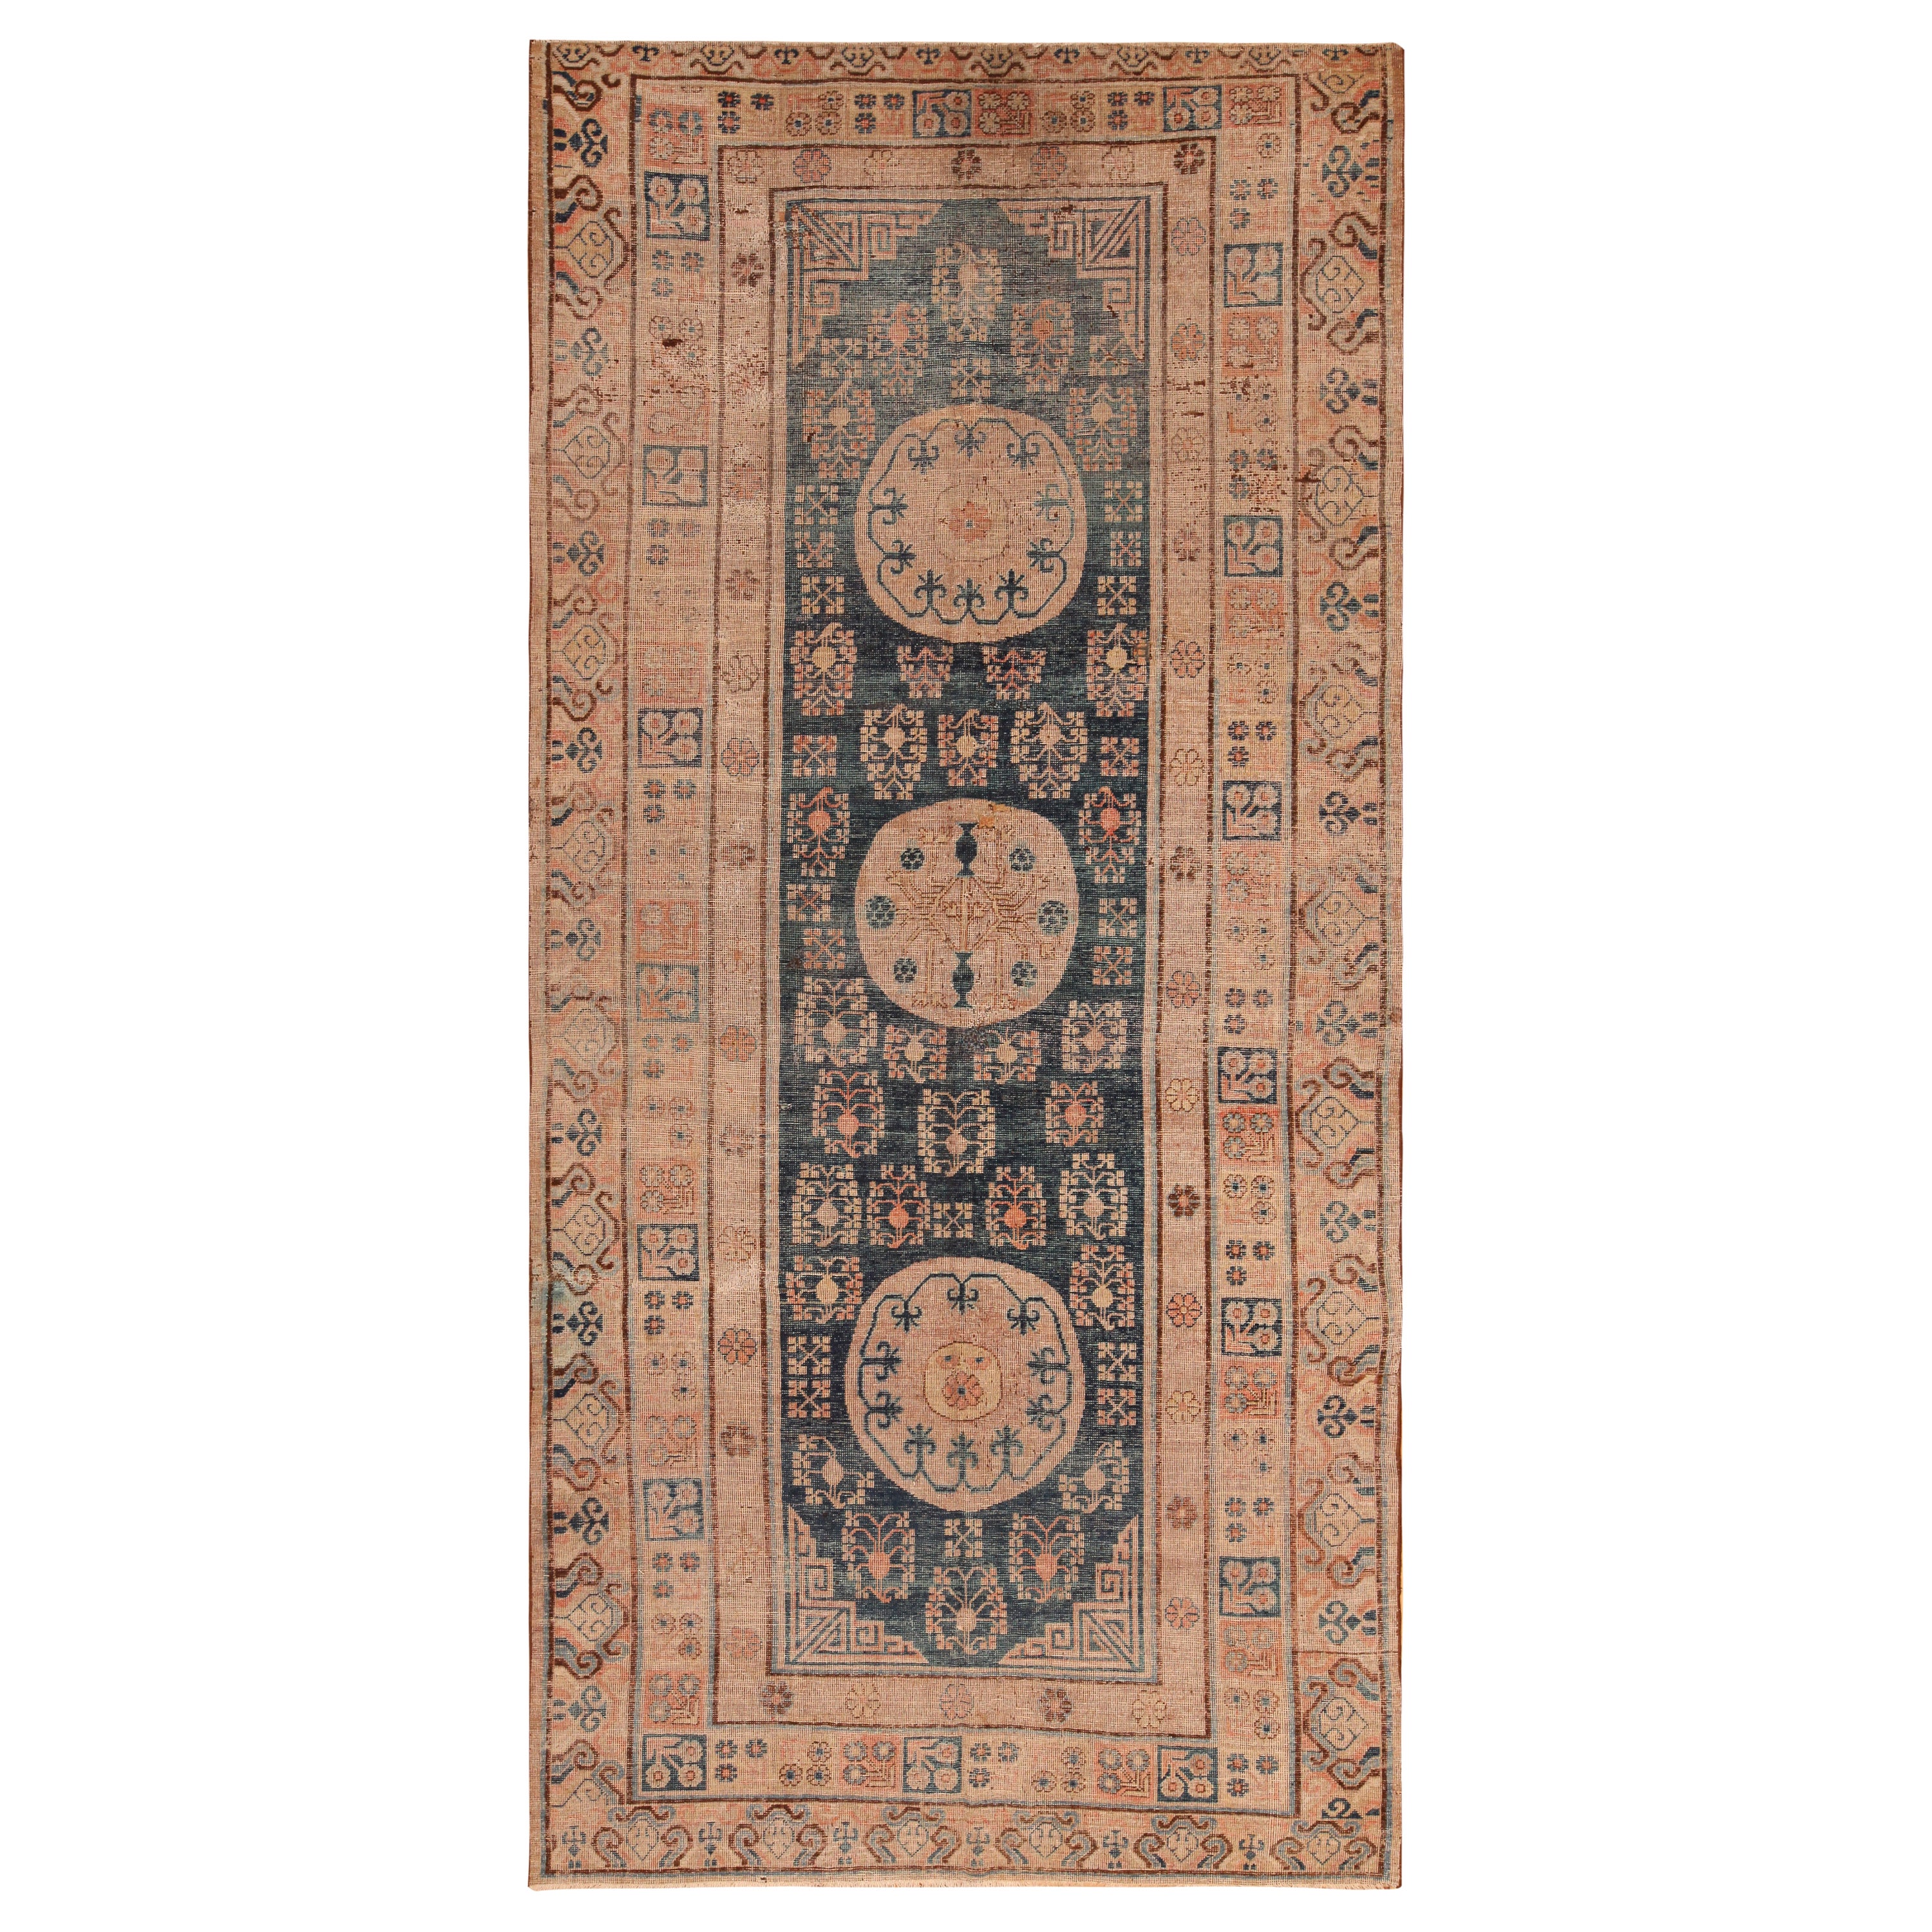 Antiker Khotan-Teppich aus Ostturkestan. 6 ft 6 in x 13 ft 9 in